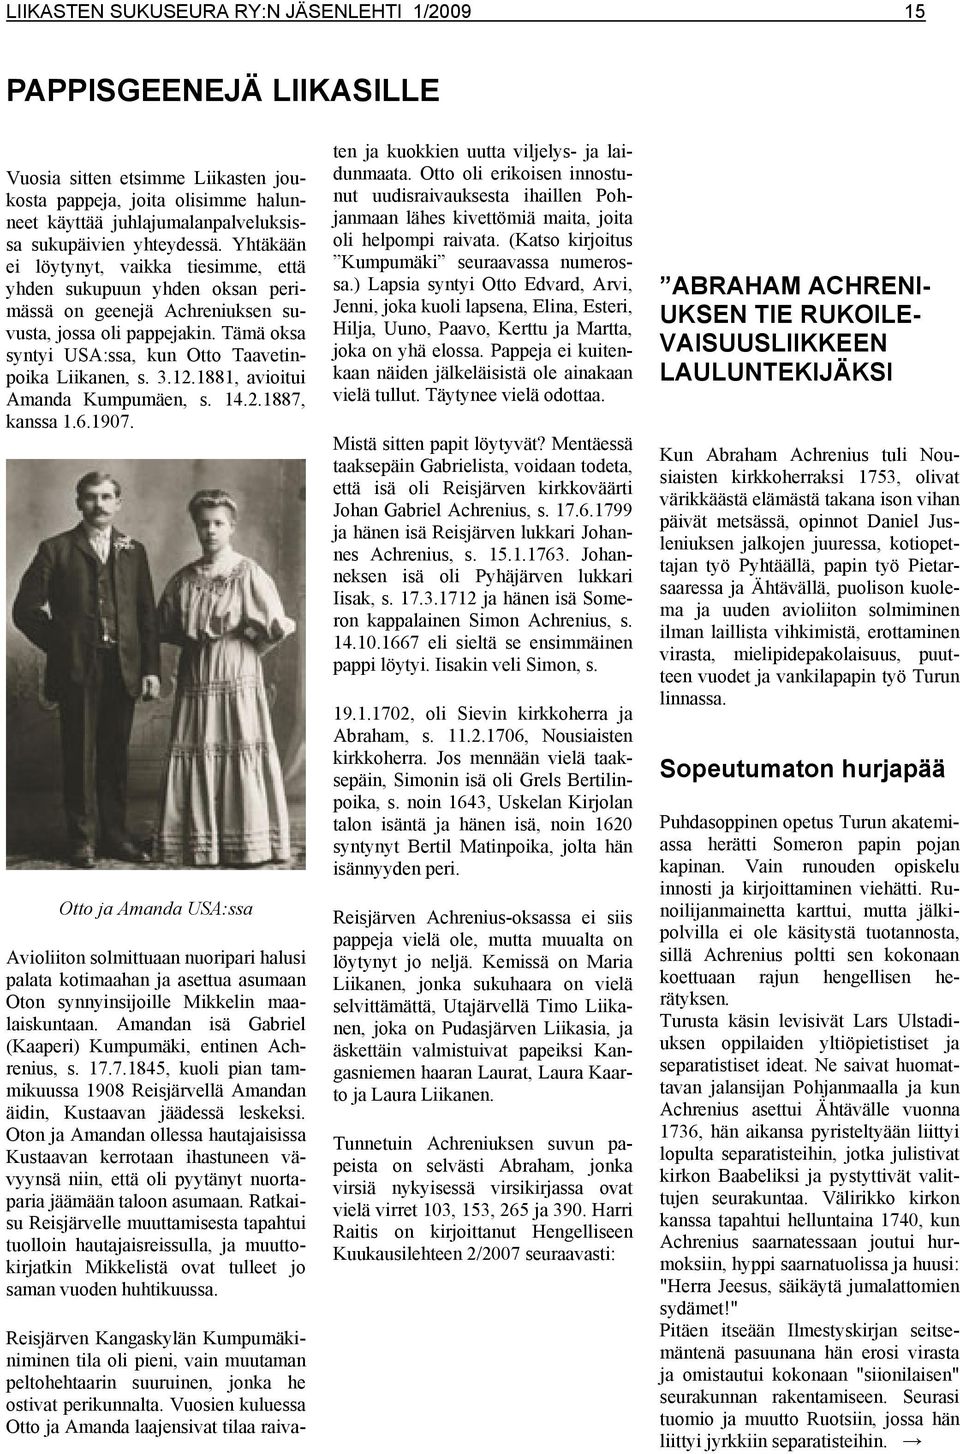 Tämä oksa syntyi USA:ssa, kun Otto Taavetinpoika Liikanen, s. 3.12.1881, avioitui Amanda Kumpumäen, s. 14.2.1887, kanssa 1.6.1907.